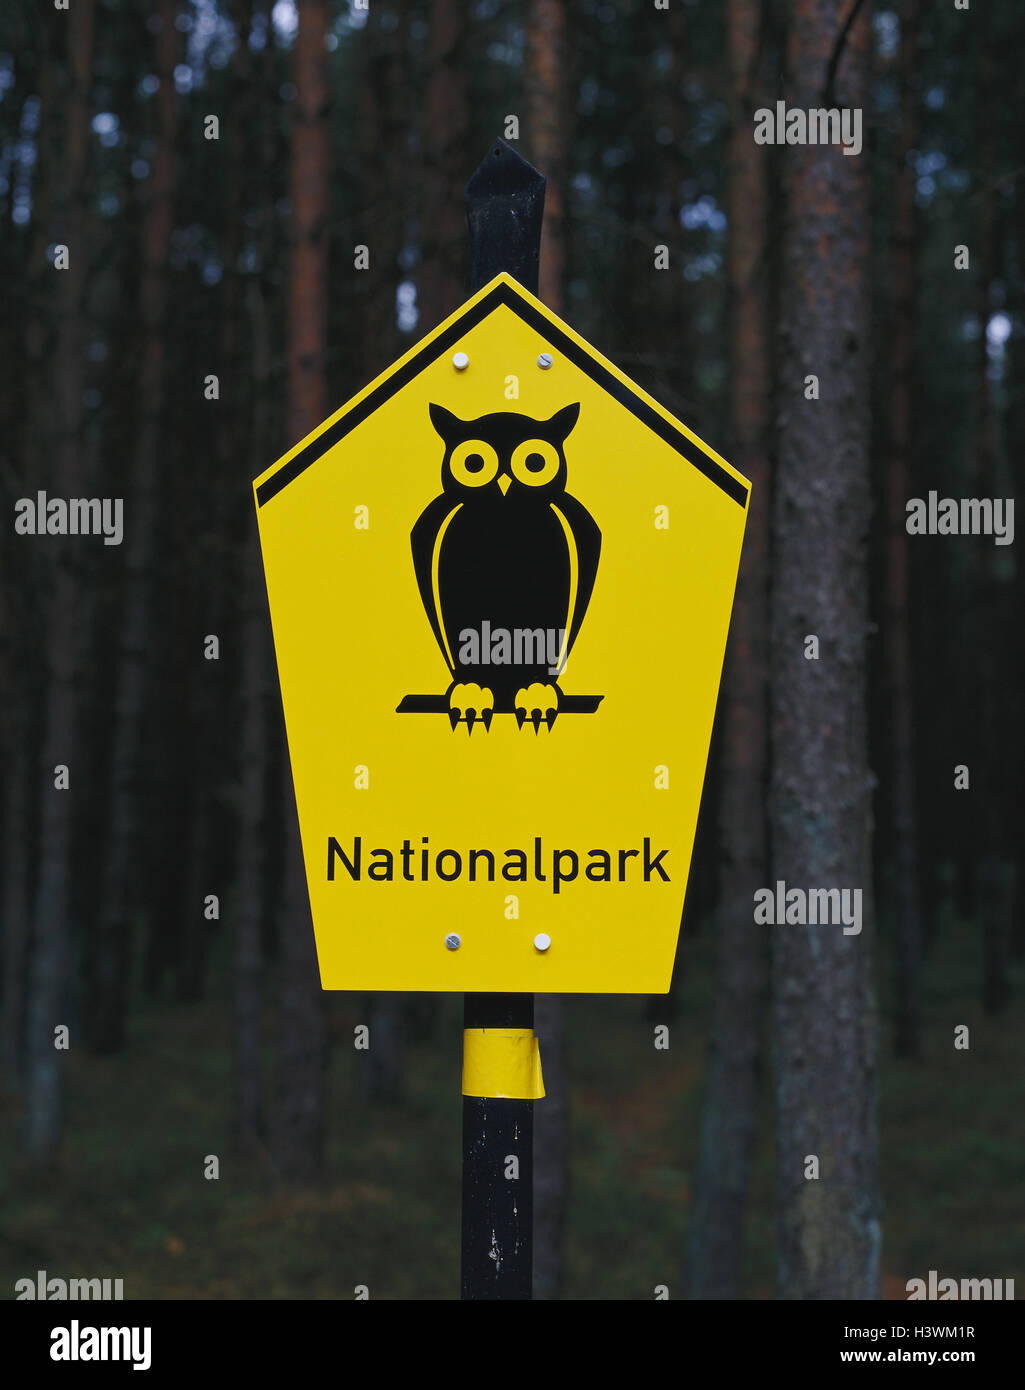 Astuce, signe, parc national, l'Allemagne, signe, jaune, Pictogramm, OWL, réserve naturelle, zone de loisirs de verdure Banque D'Images